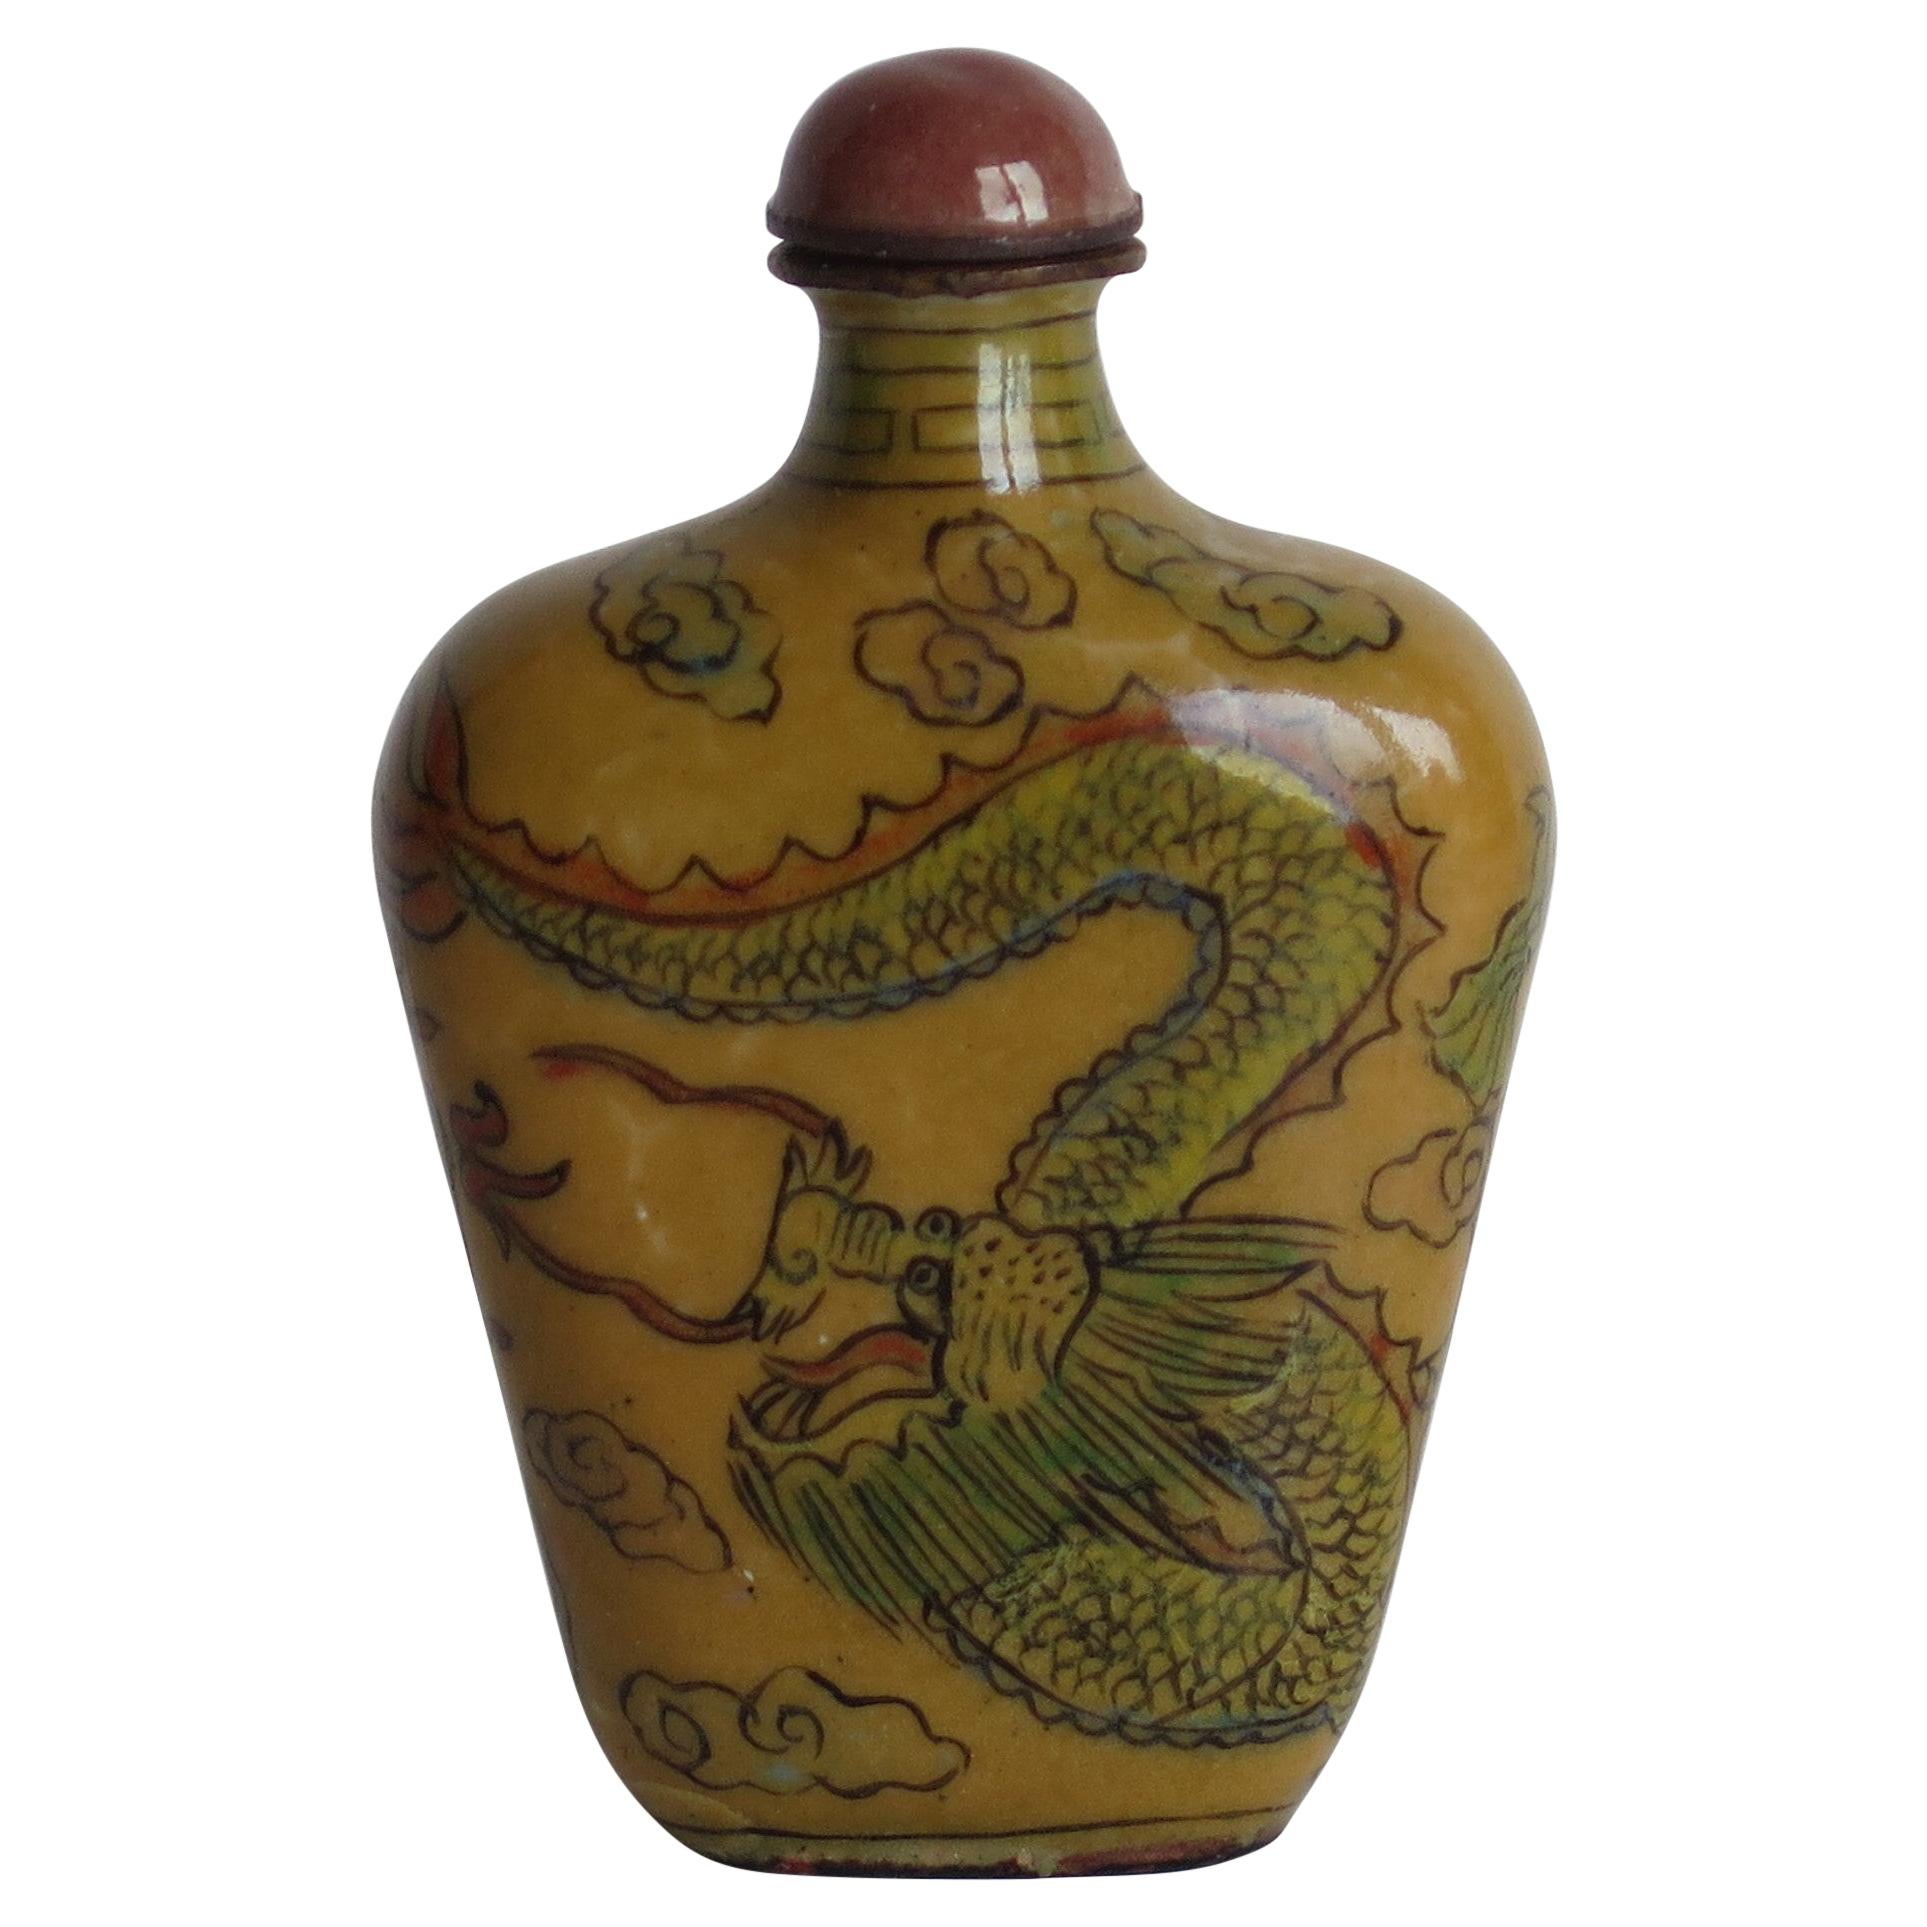 3.3" Sammeln China Farbige Glasur Vergoldung Drachen Ohr Amulett Snuff Bottle 